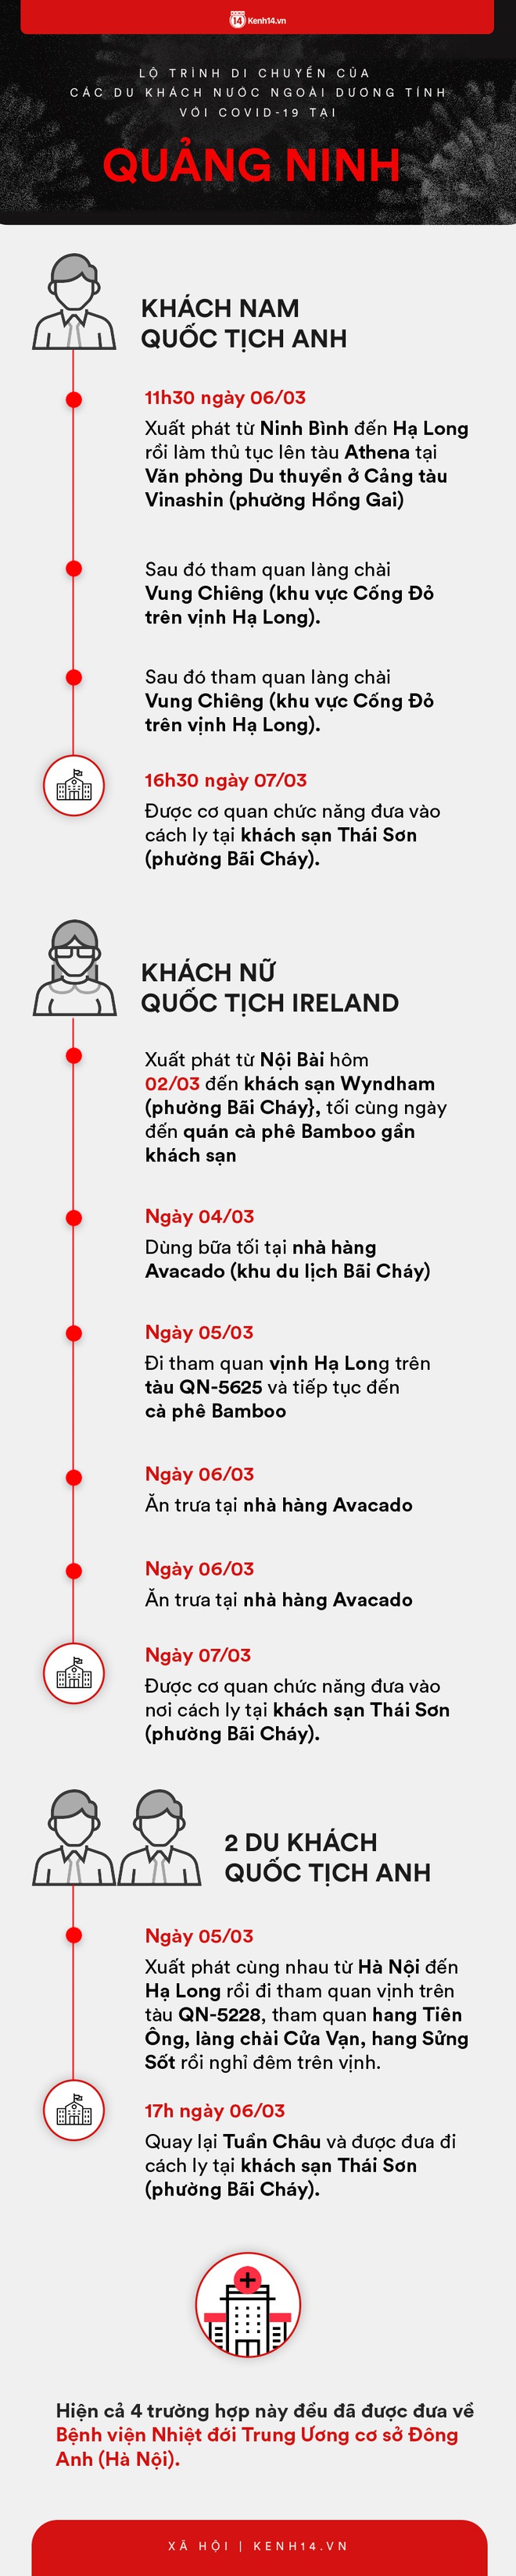 Infographic: Lộ trình di chuyển của 9 người nước ngoài trên chuyến bay VN0054 dương tính với COVID-19 tại Việt Nam - Ảnh 2.